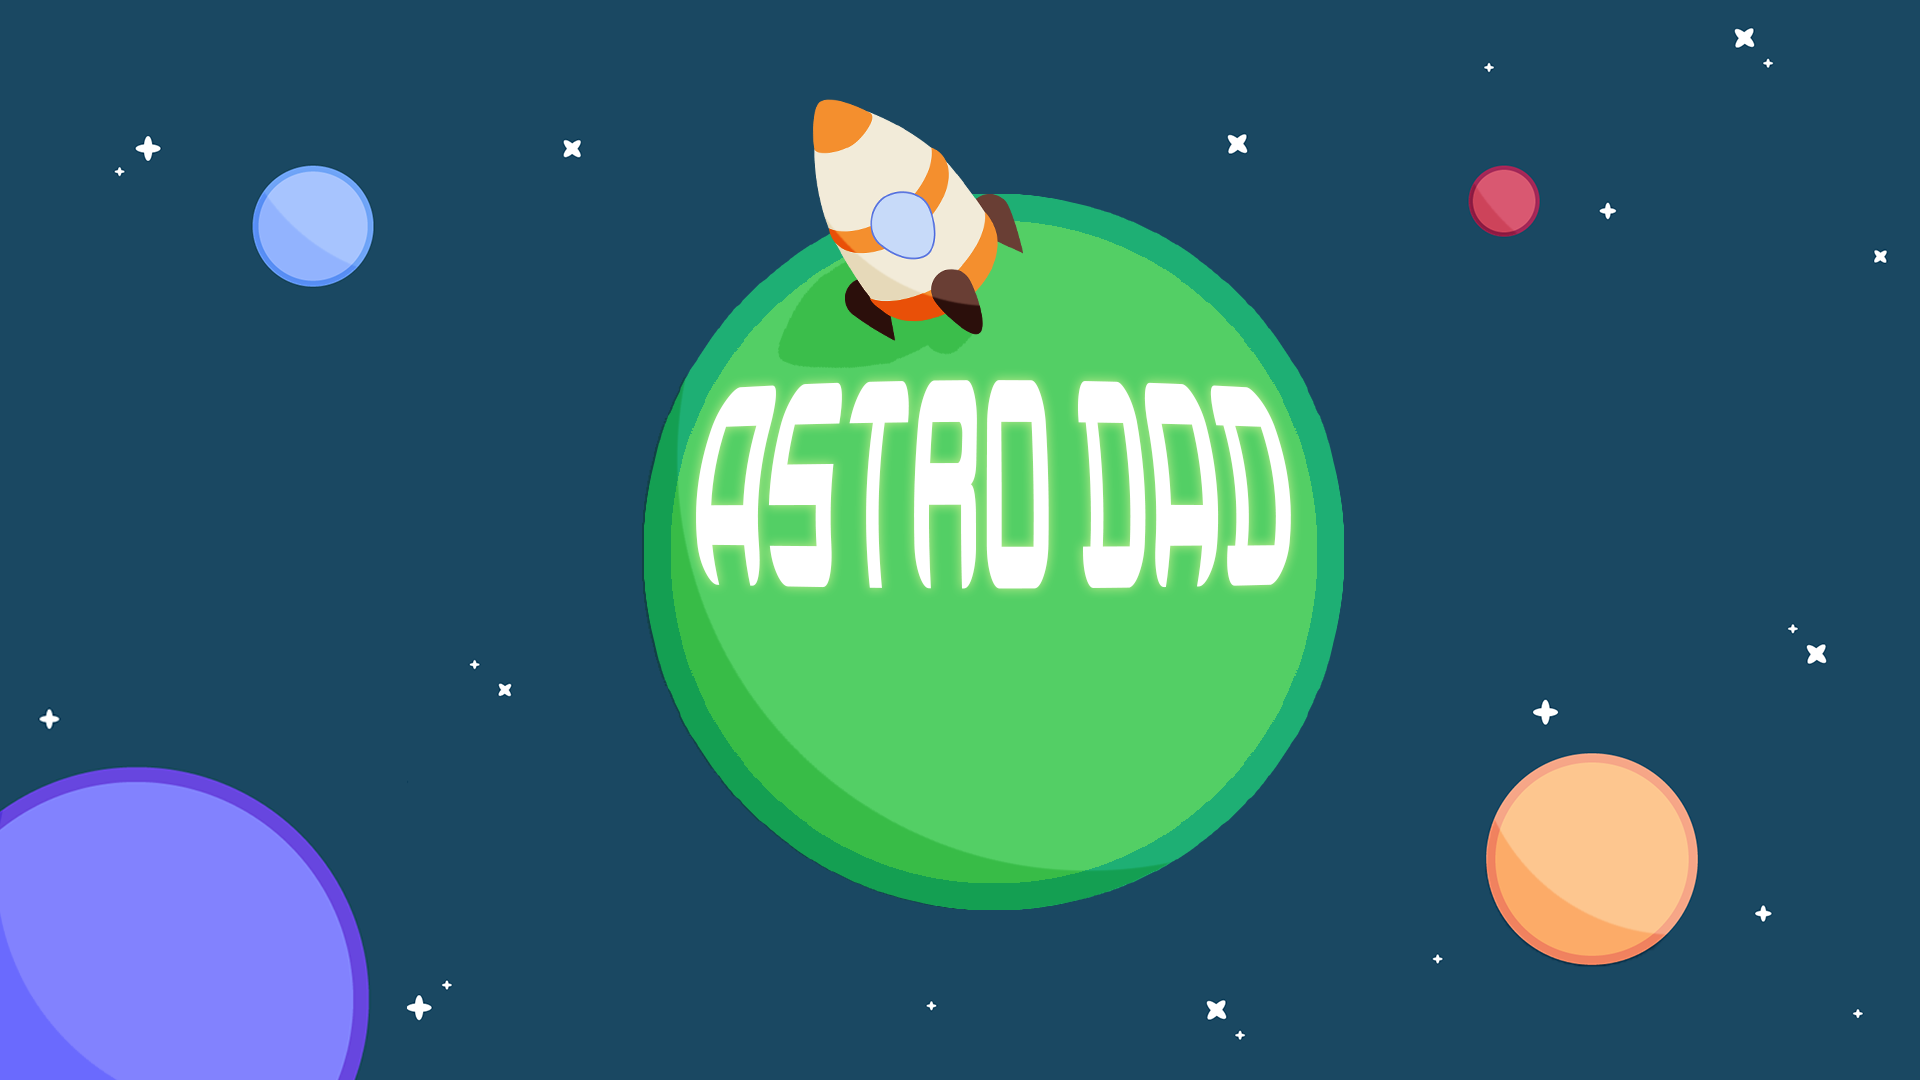 Astro Dad